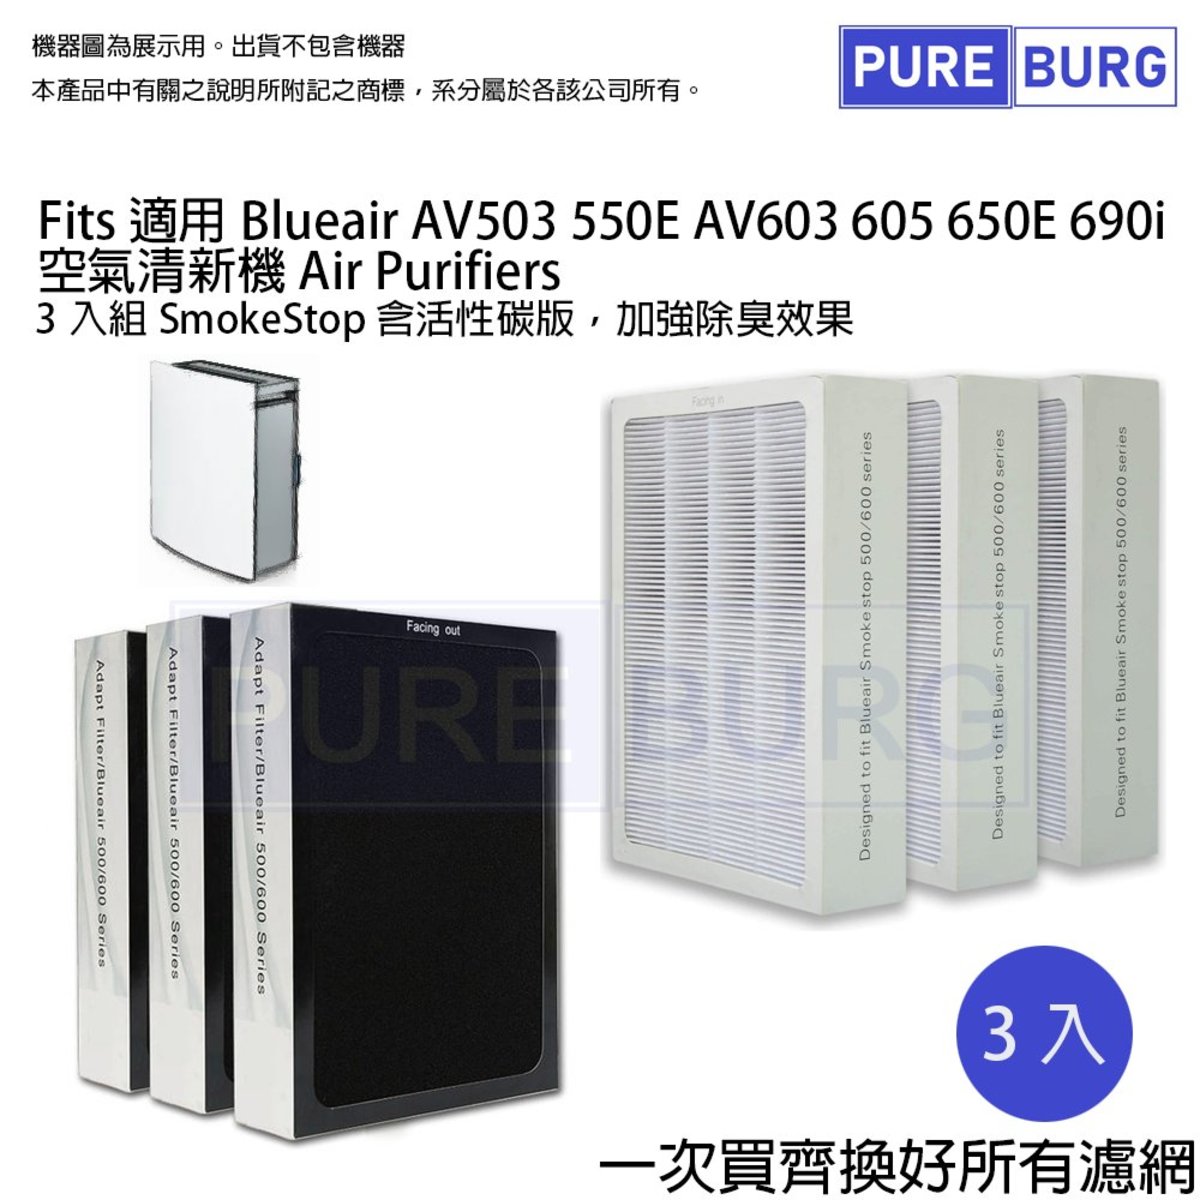 Replacement 3-Pack HEPA SmokeStop Filter Set for Blueair AV503 550E AV603 605 650E 690i Air Purifier